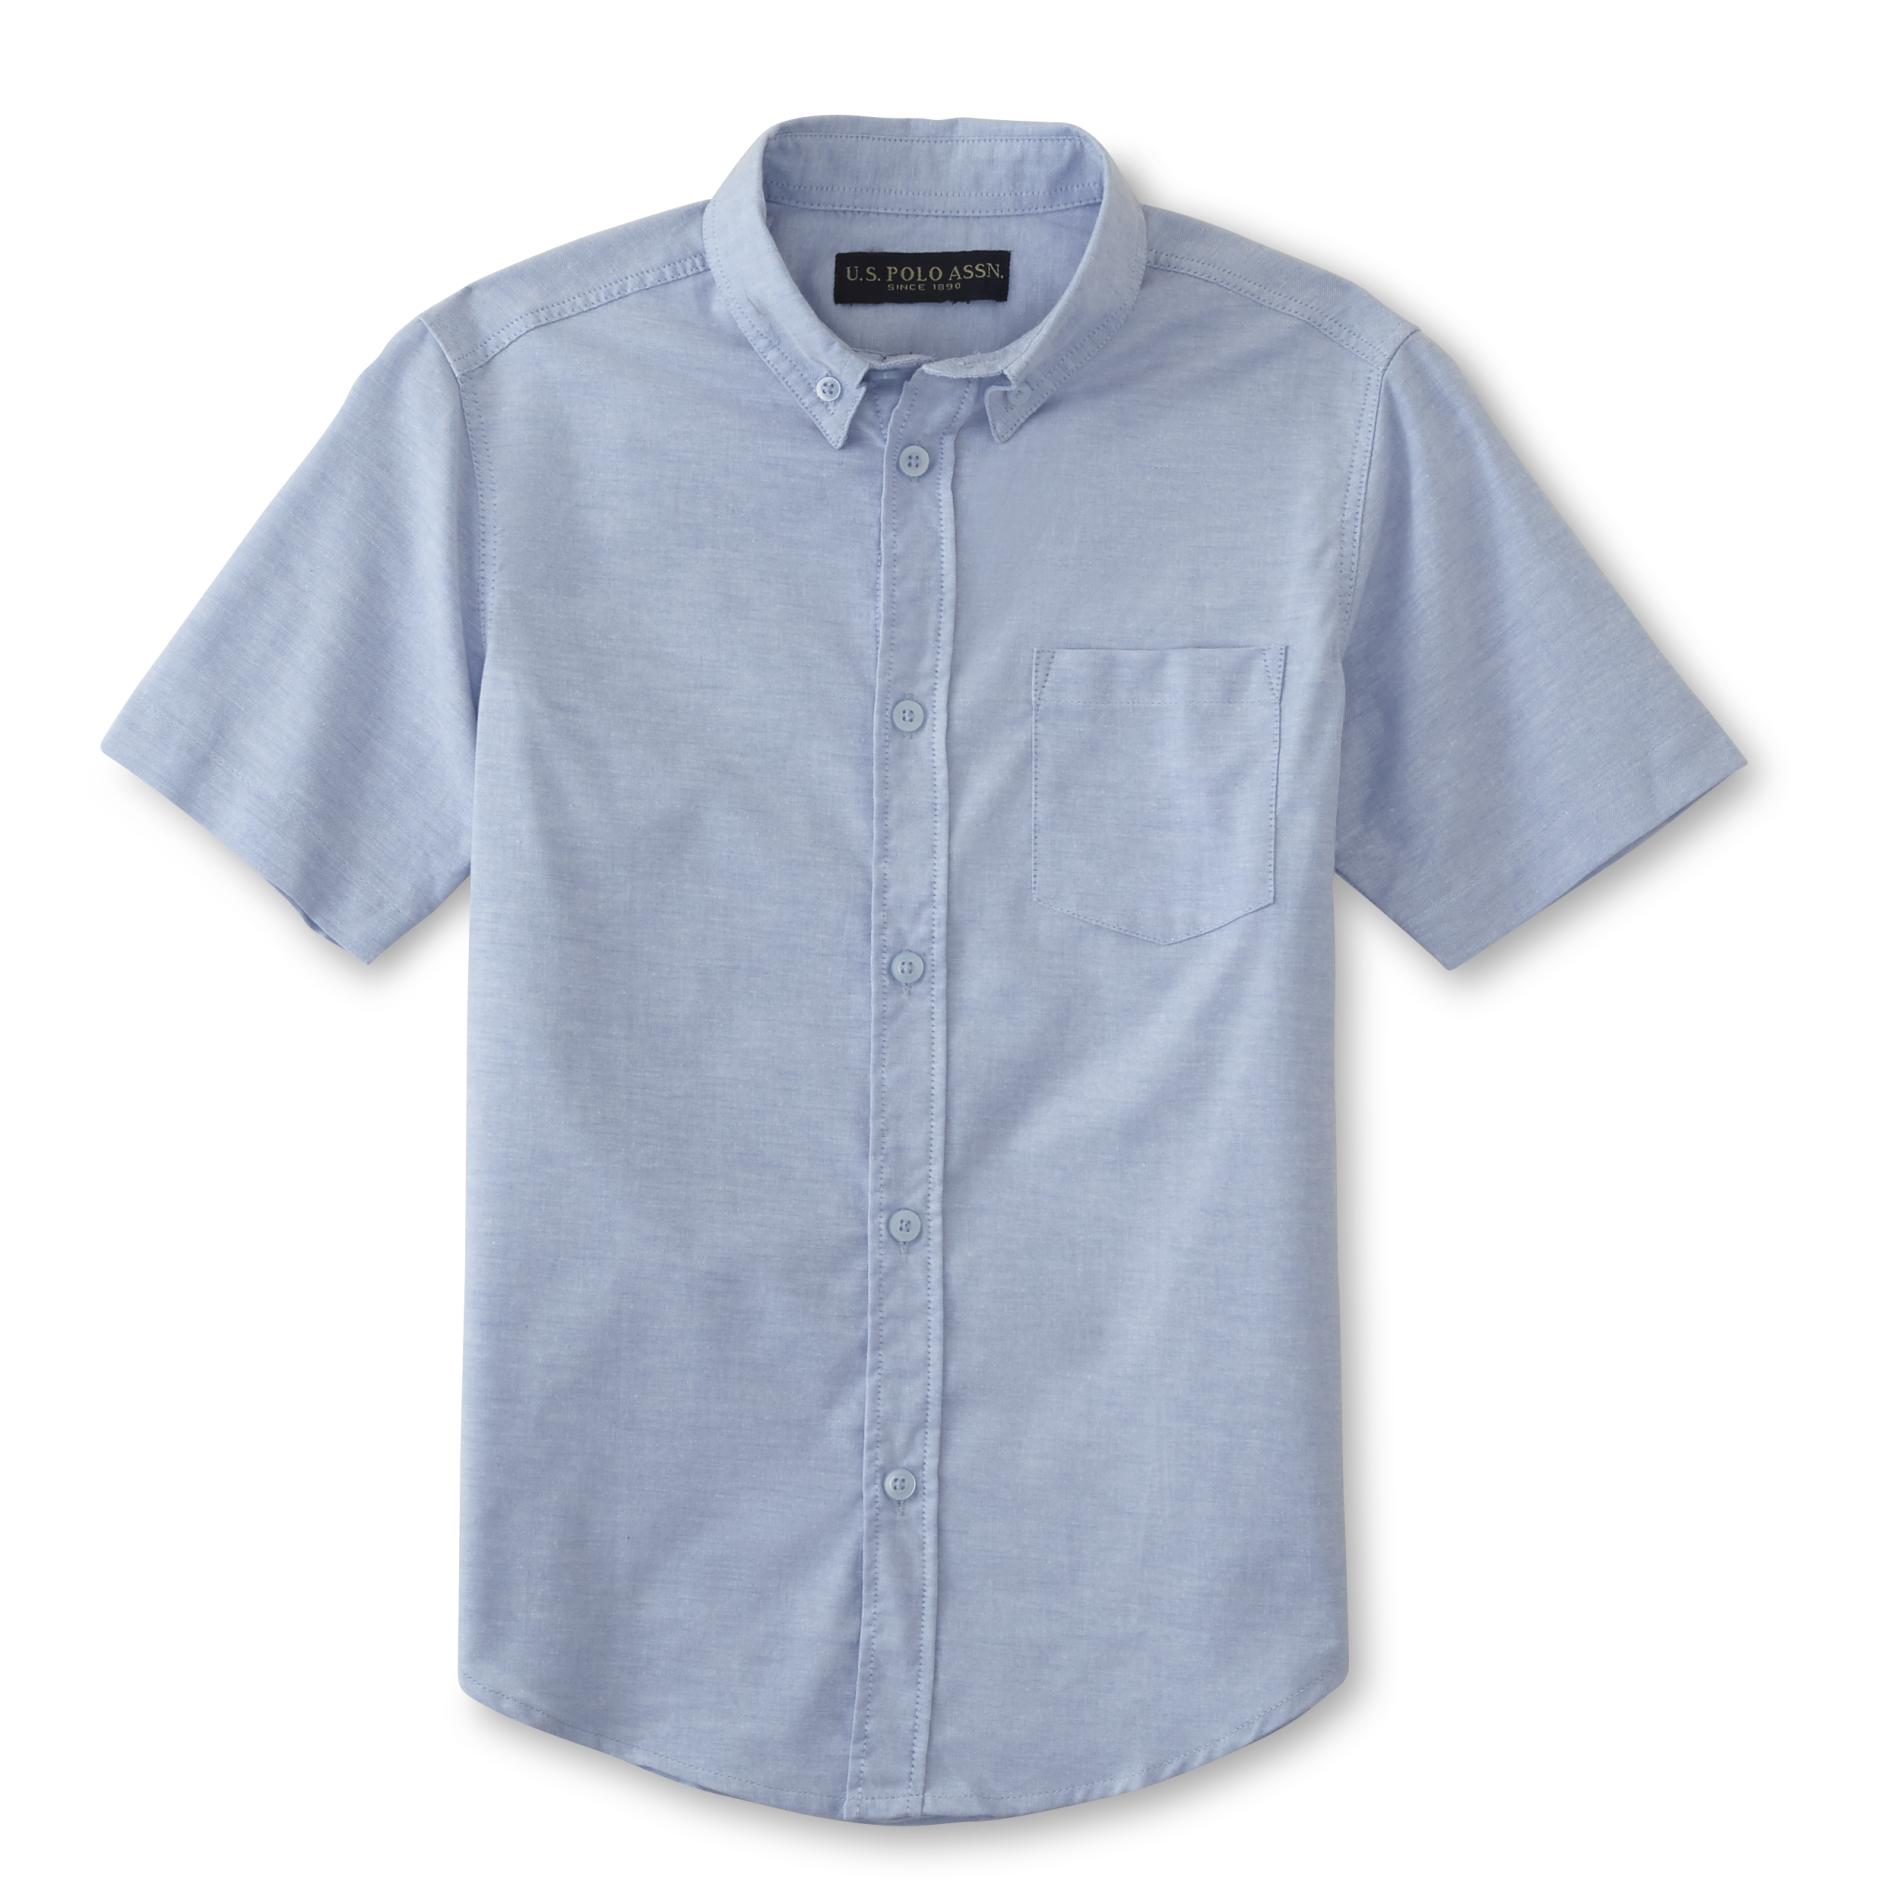 U.S. Polo Assn. Boys' Short-Sleeve Oxford Shirt